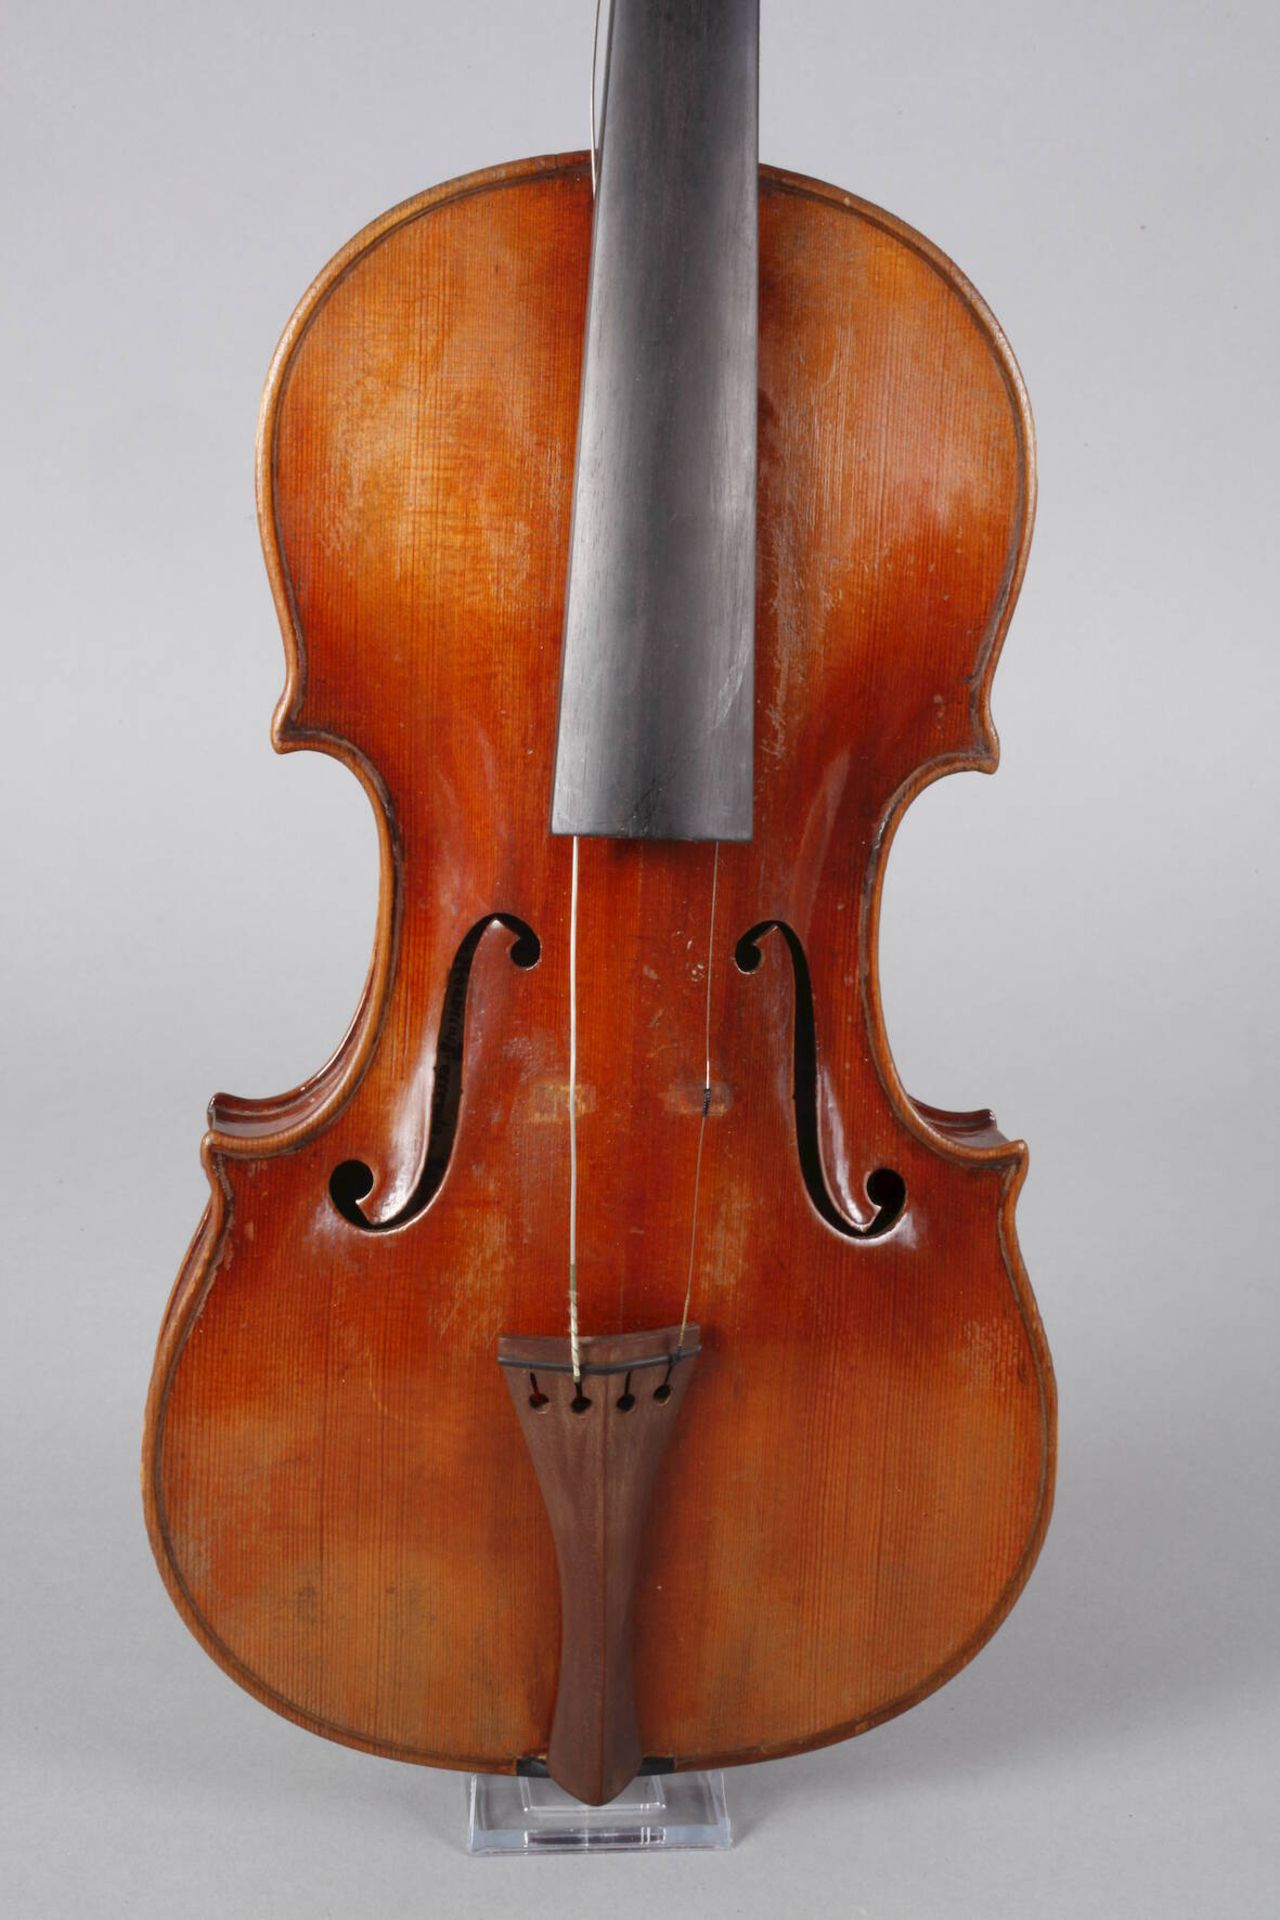 Violine auf Zettel bezeichnet Joannes Franciscus Pressenda p Raphael fecit Taurini anno domini 1830, - Image 2 of 7